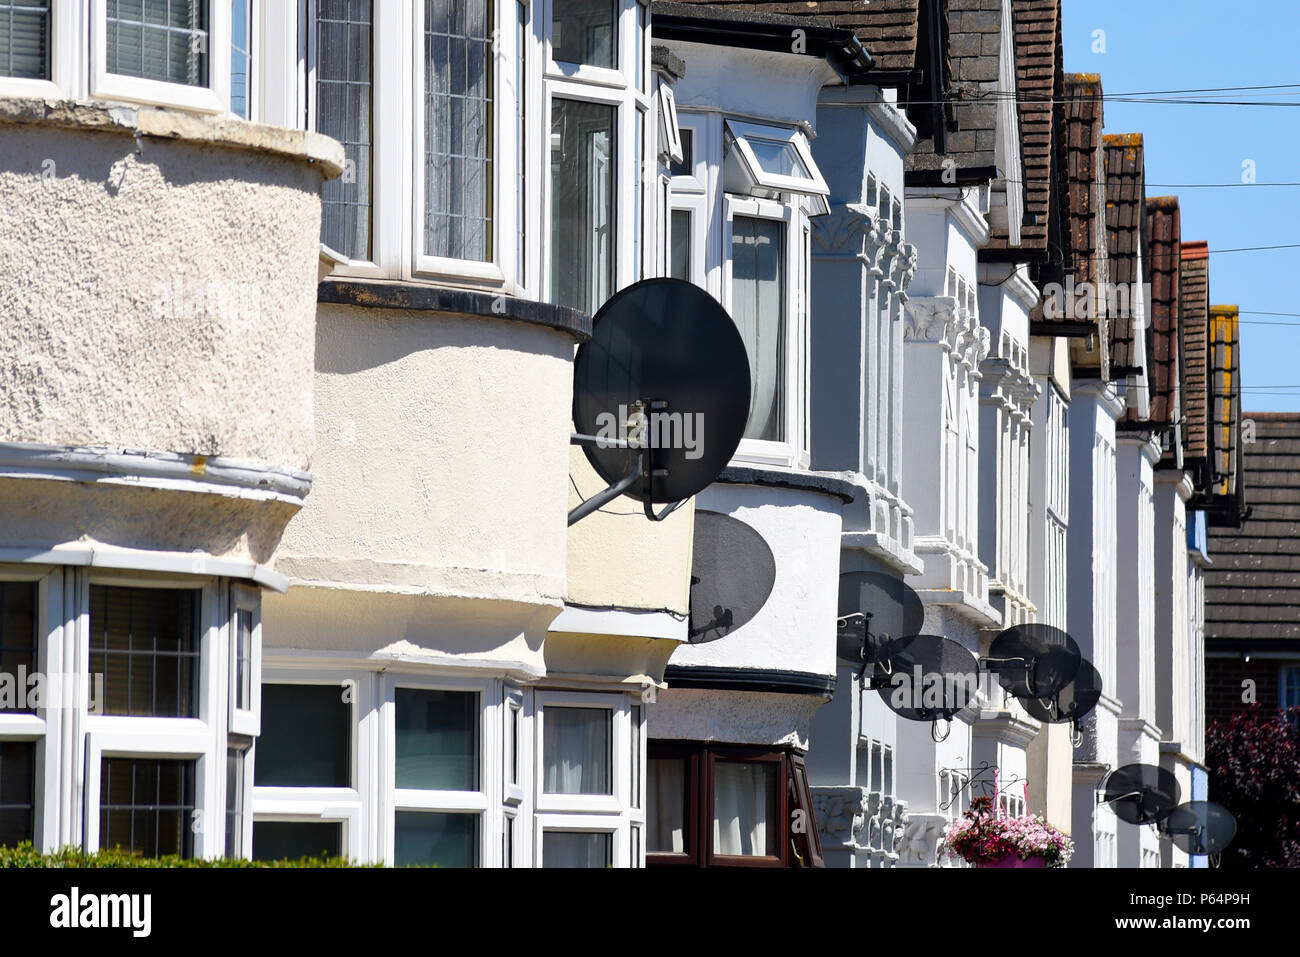 Reihe von Satellitenschüsseln extern montiert auf Reihe von weißen Häusern. Sat-TV-Receiver auf Erkerfenster. Westcliff On Sea, Essex, Großbritannien Stockfoto